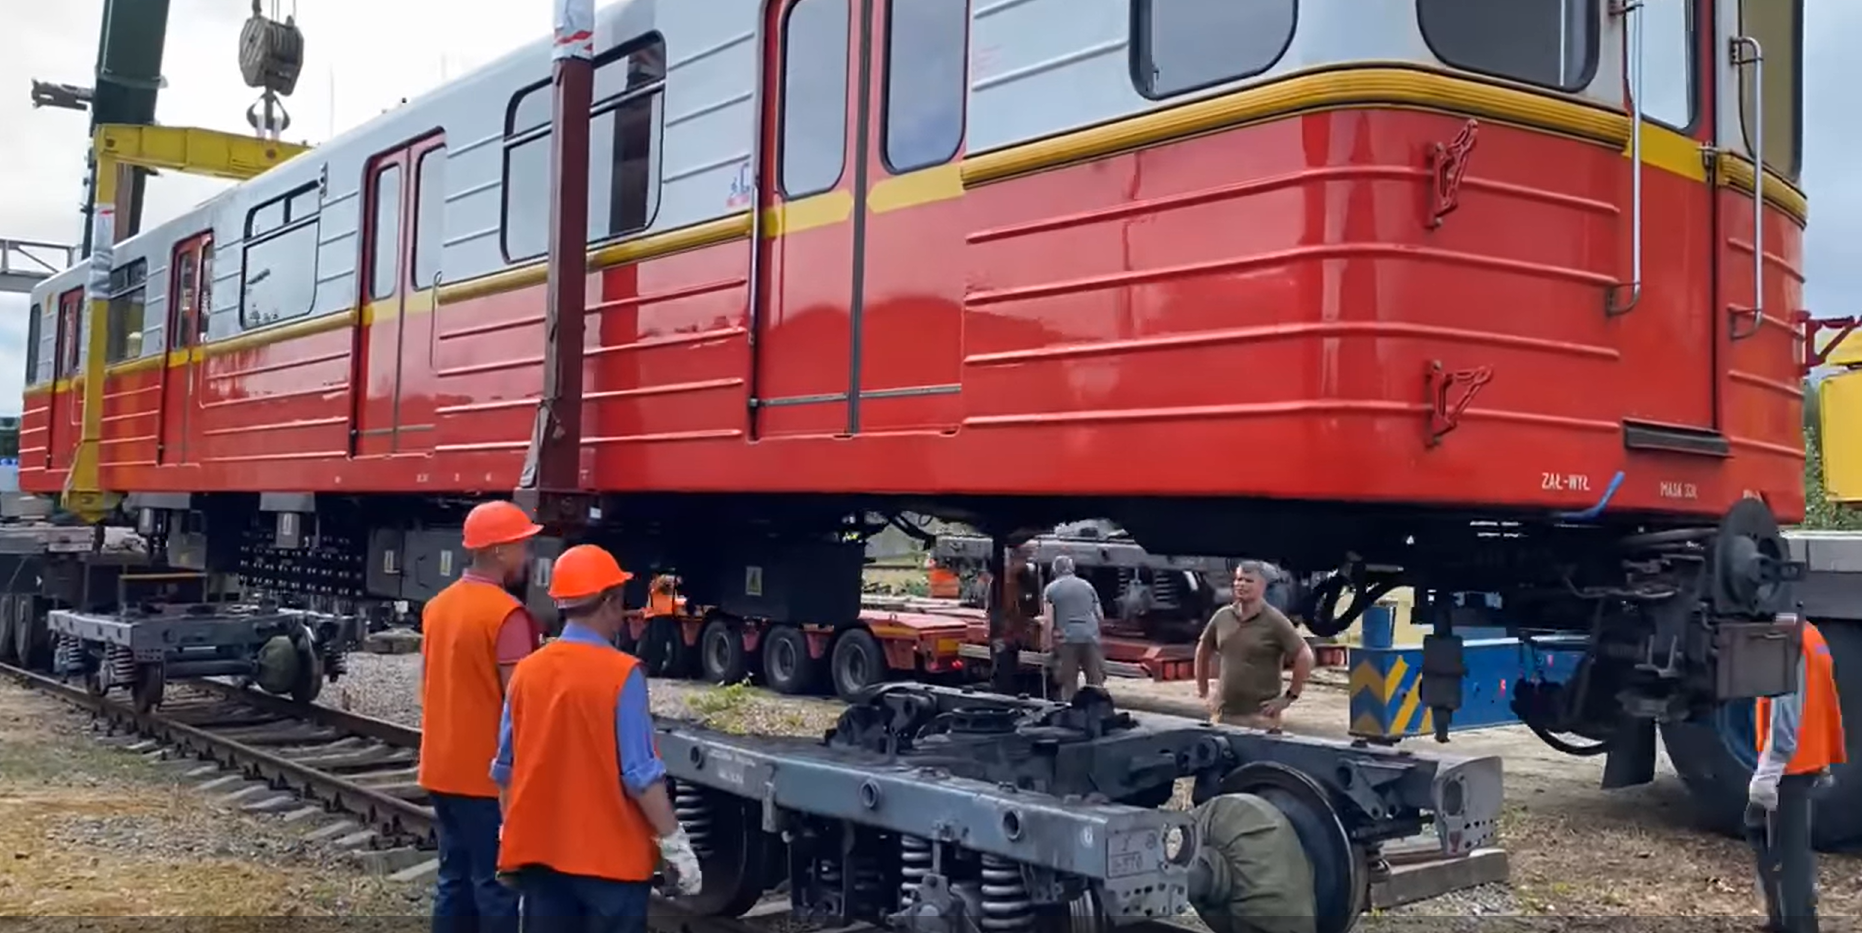 До Києві прибули ще 12 вагонів метро з Варшави: відео